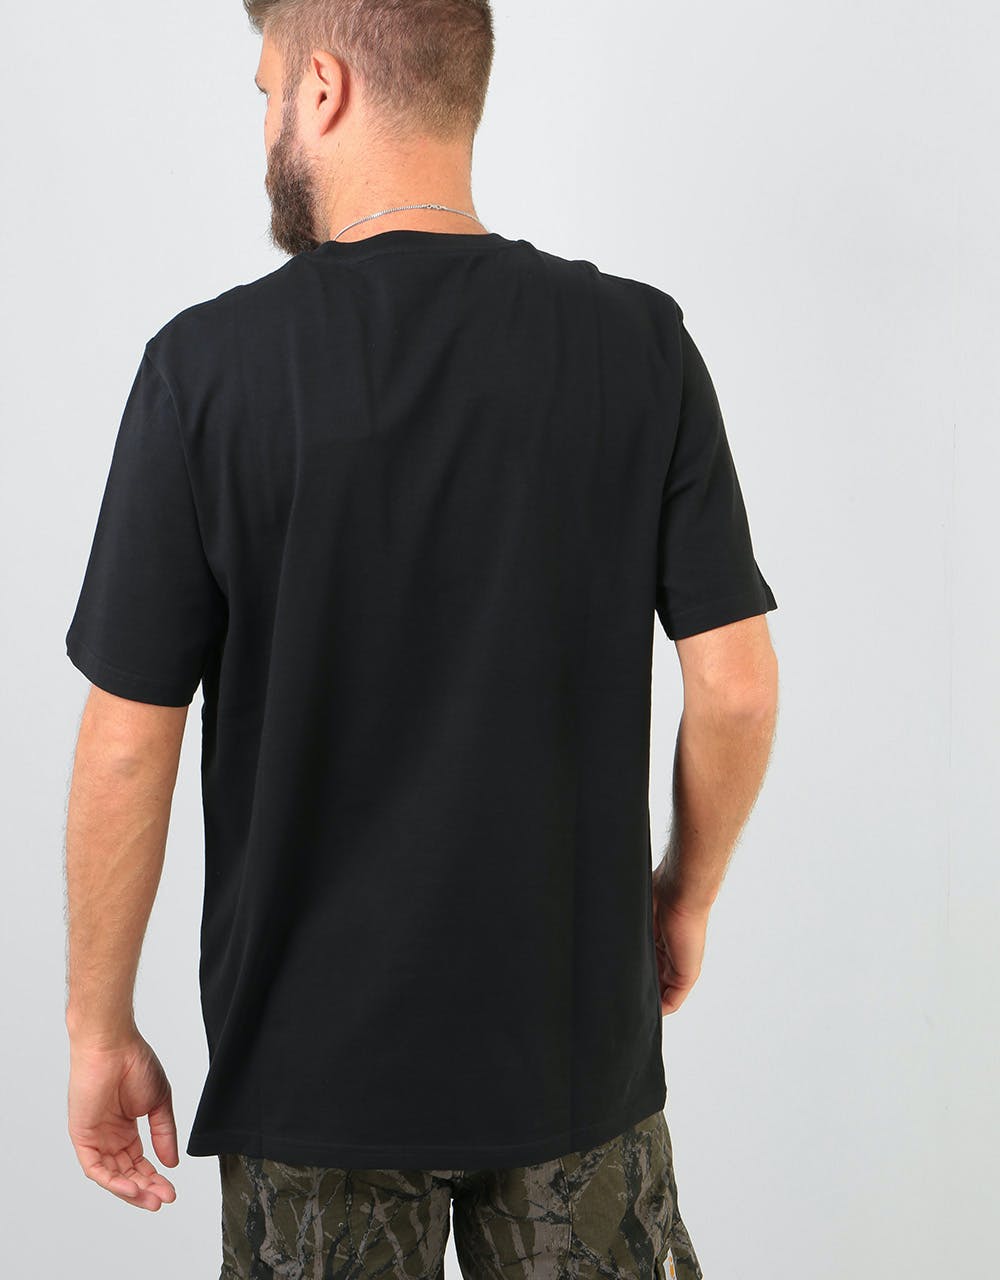 Carhartt WIP S/S Script T-Shirt - Black/Black